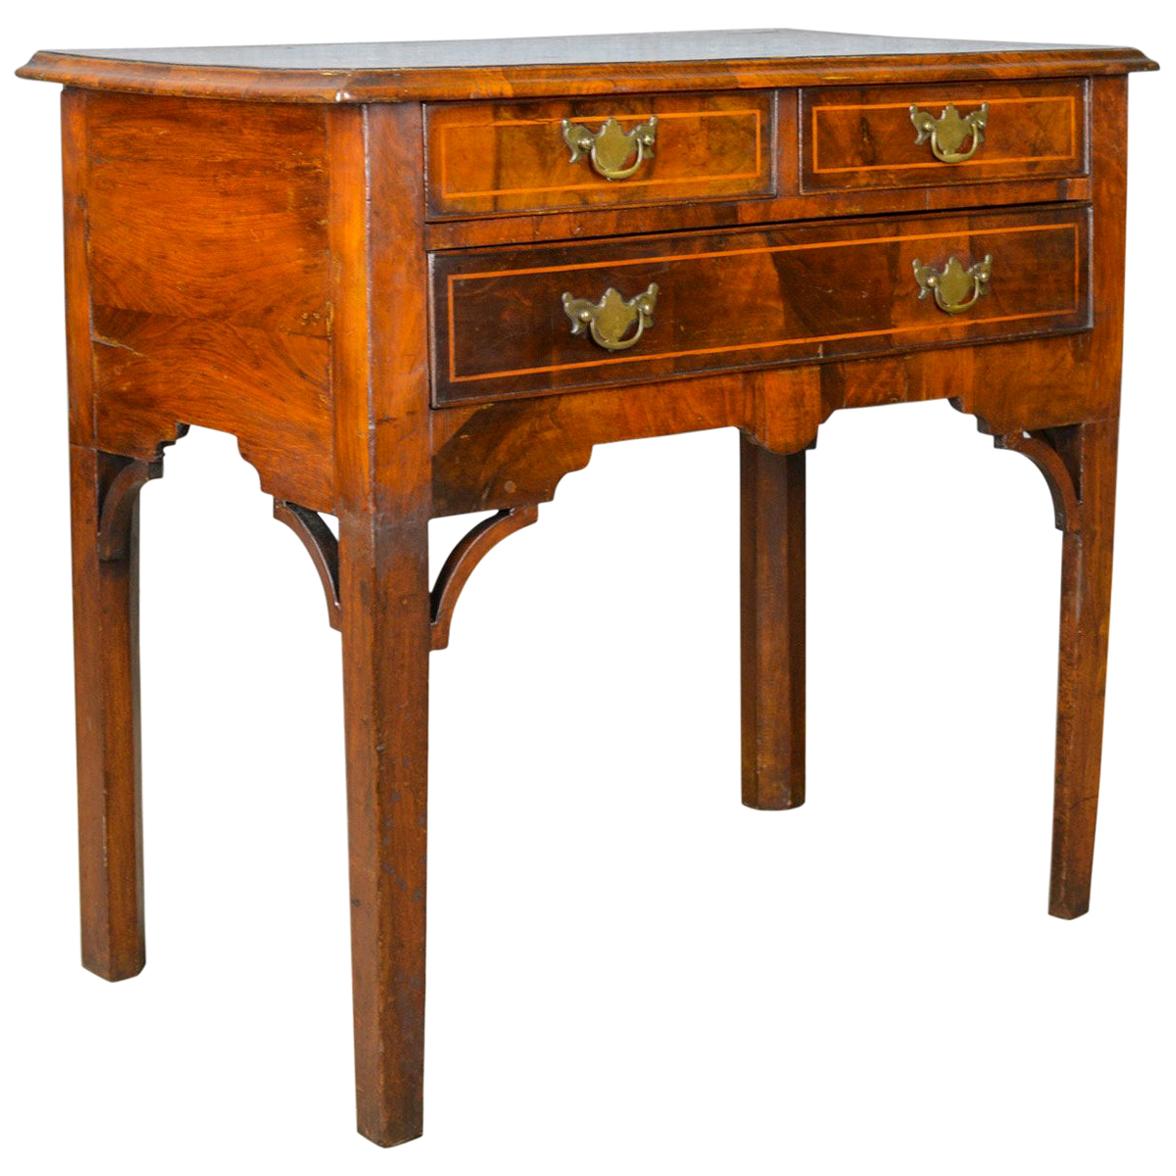 Antique Lowboy, English, Georgian, Walnut, Side Table, circa 1800